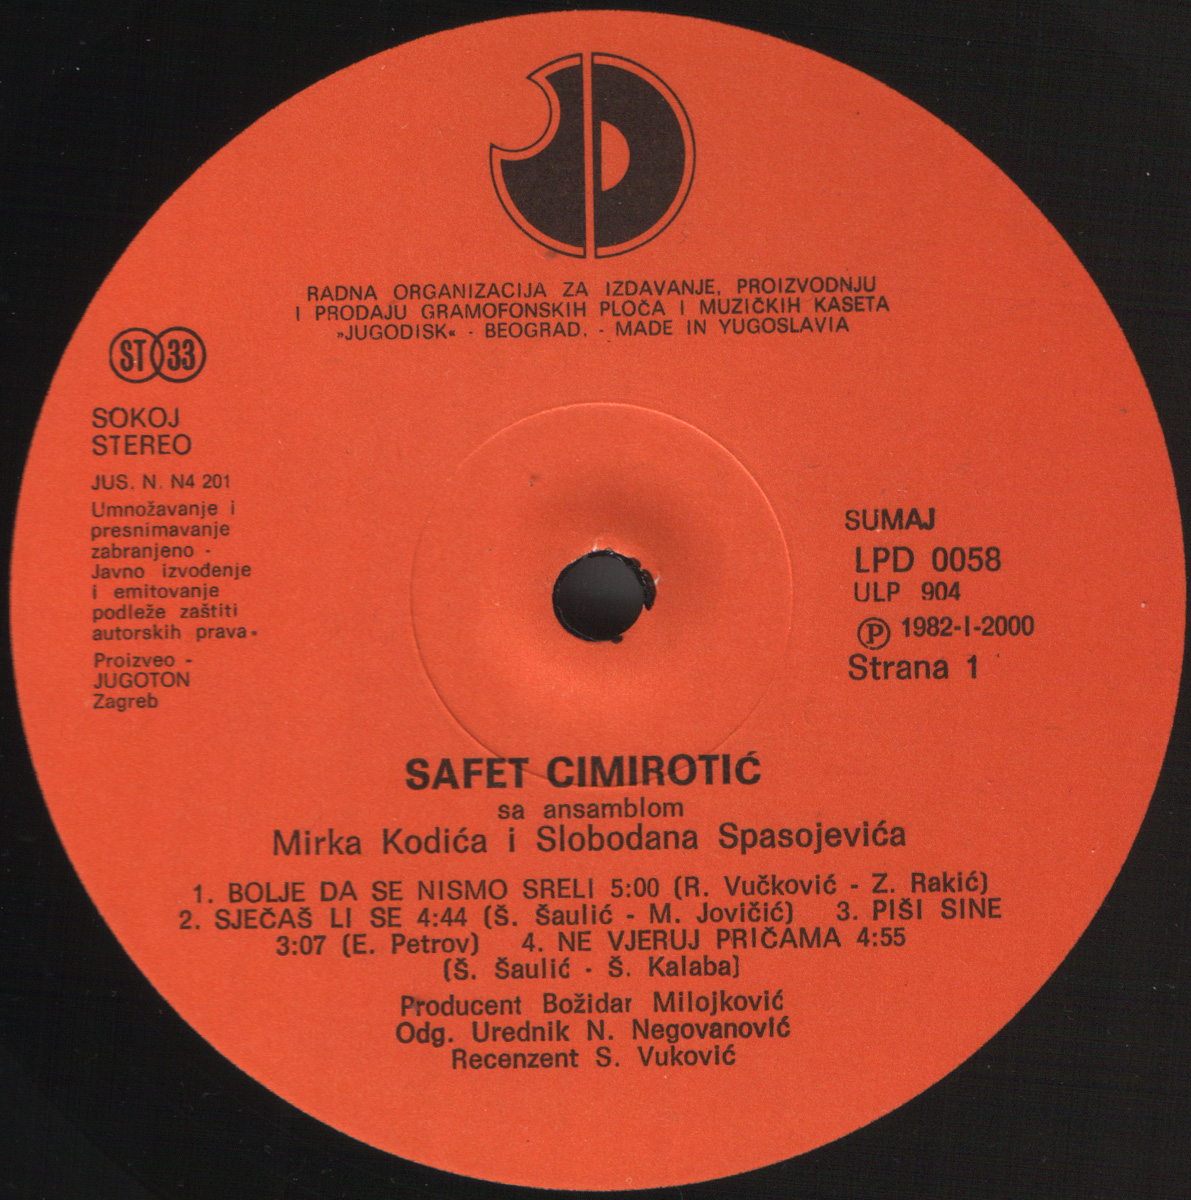 Safet Cimirotic 1982 A